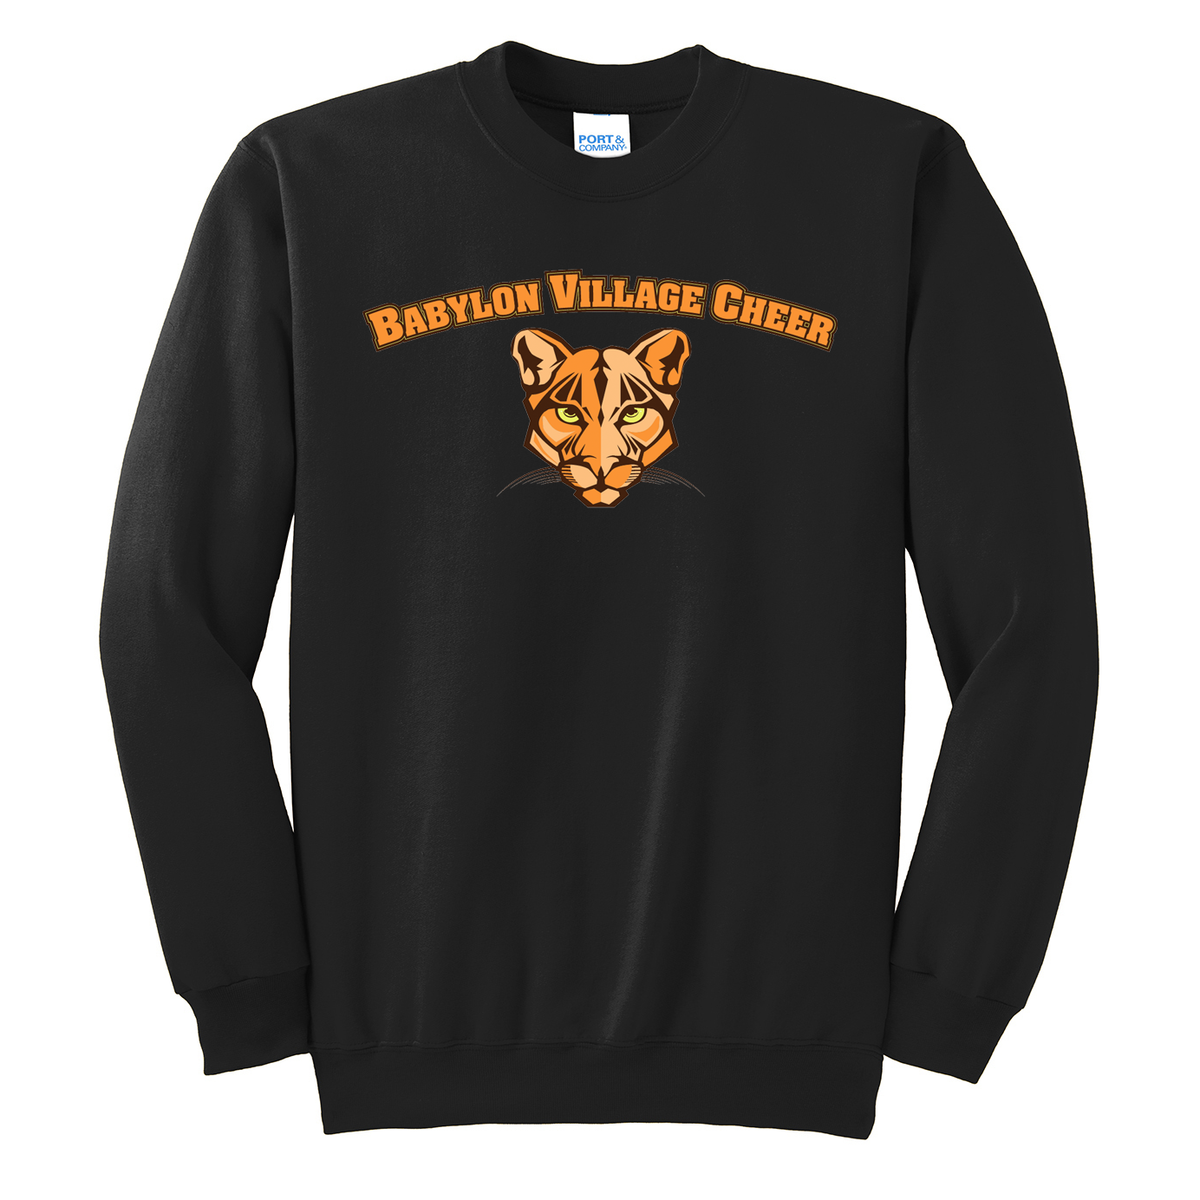 Babylon Village Cheer Crew Neck Sweater